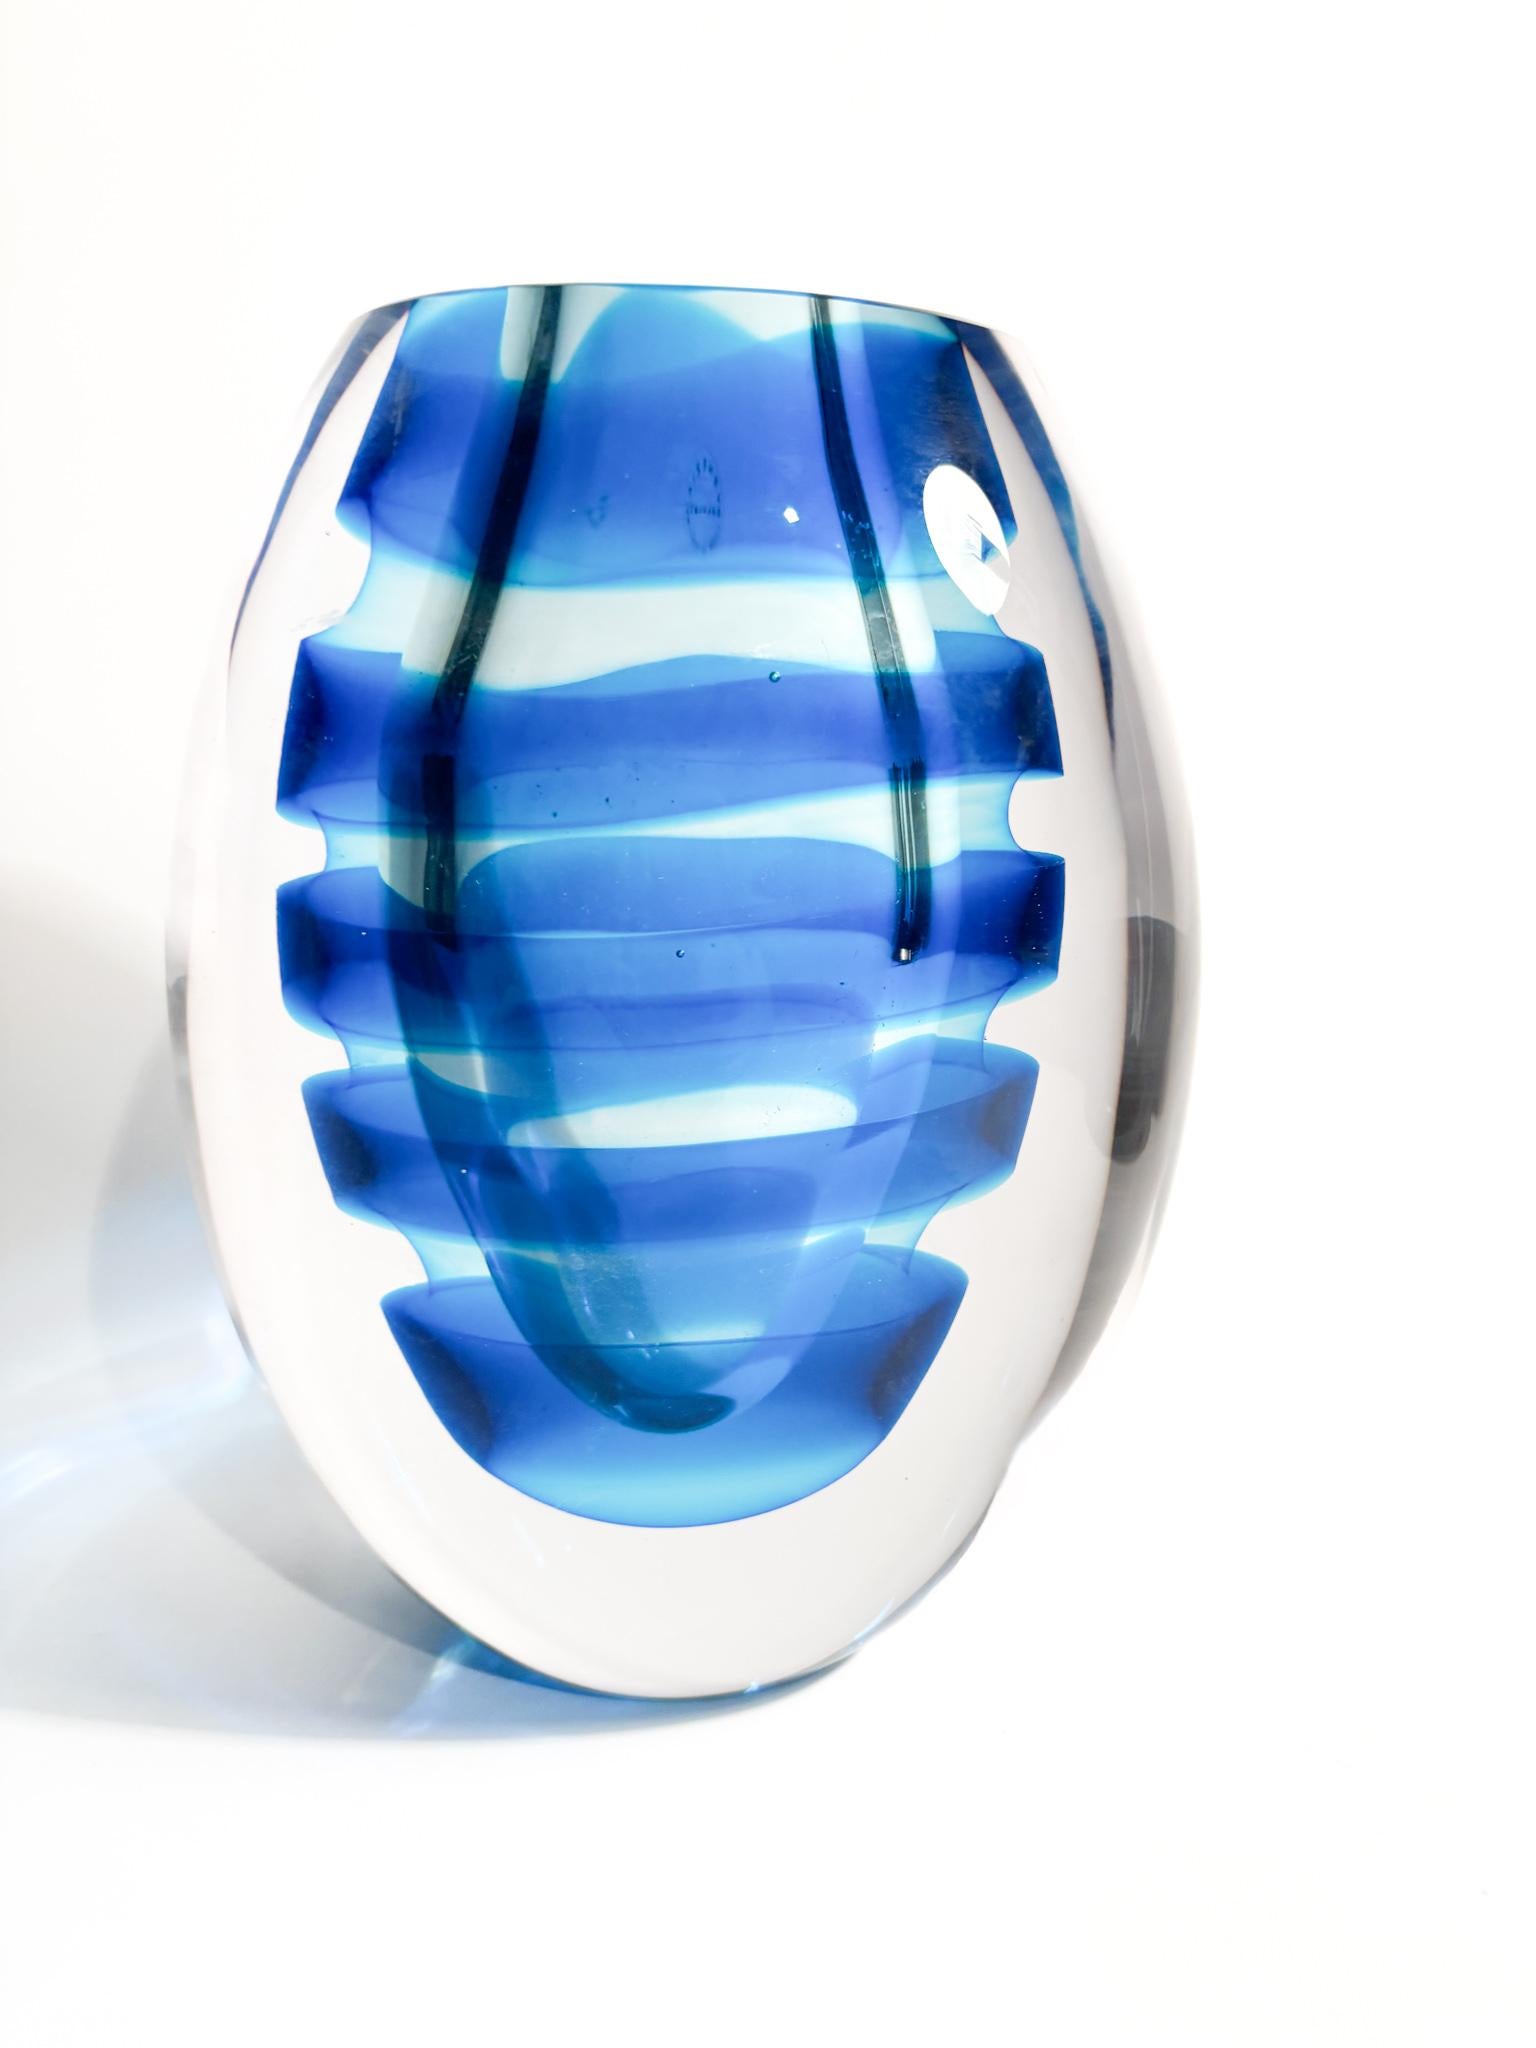 Elliptische Vase aus getauchtem Murano-Glas mit blauen Spiralen, hergestellt von Salviati im Jahr 2003.

Ø 17 cm Ø 12 cm h 21 cm

Salviati ist ein renommierter Glashersteller mit Sitz in Murano, Venedig, Italien. Das Unternehmen wurde 1859 gegründet